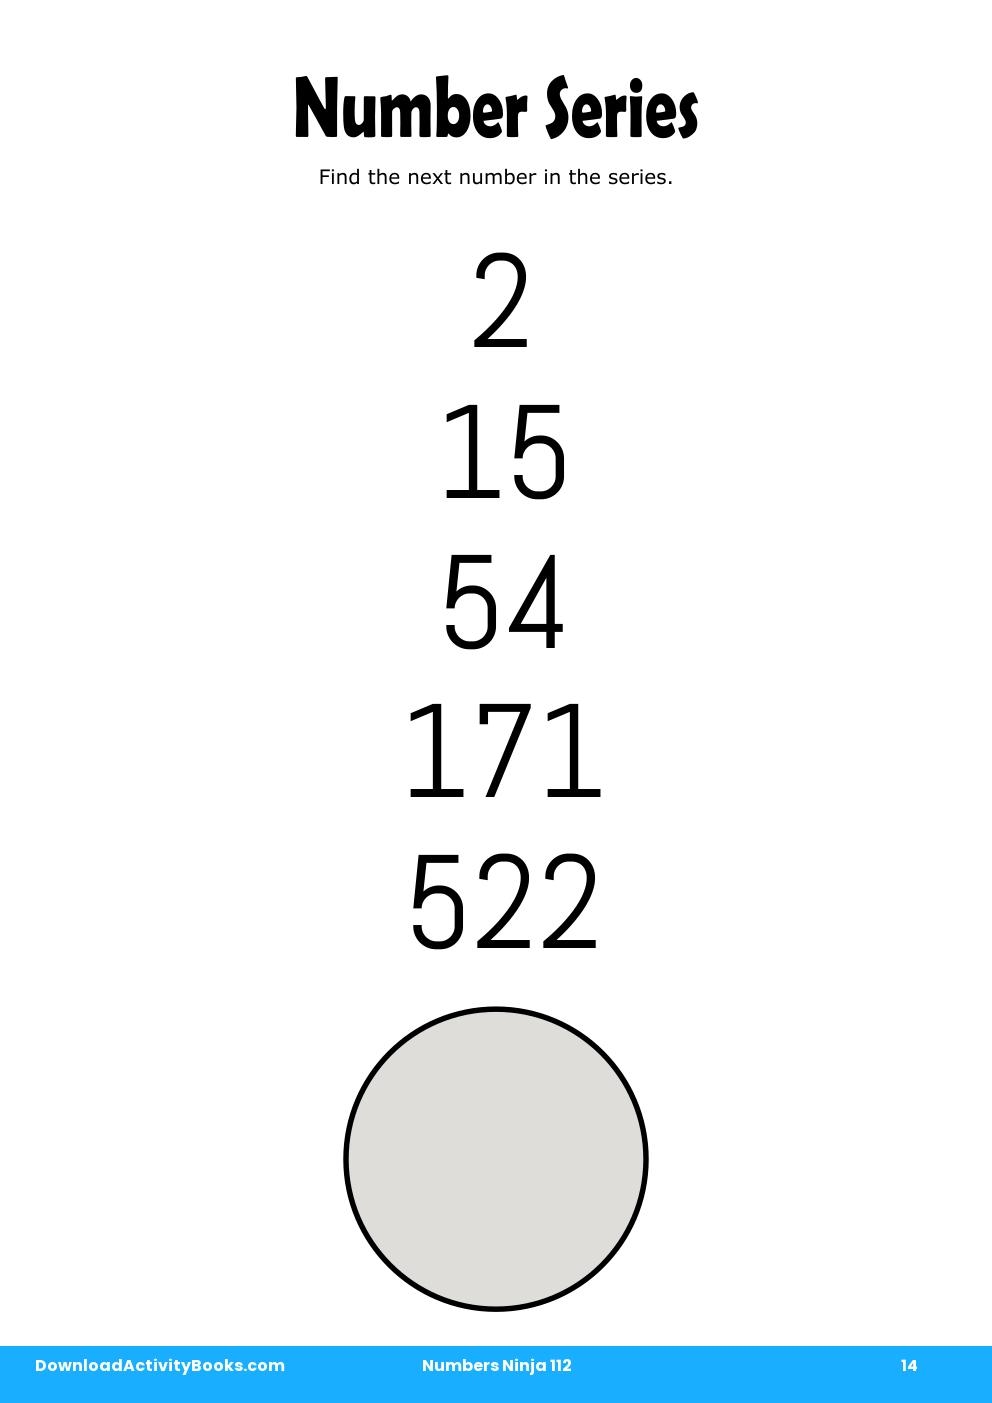 Number Series in Numbers Ninja 112